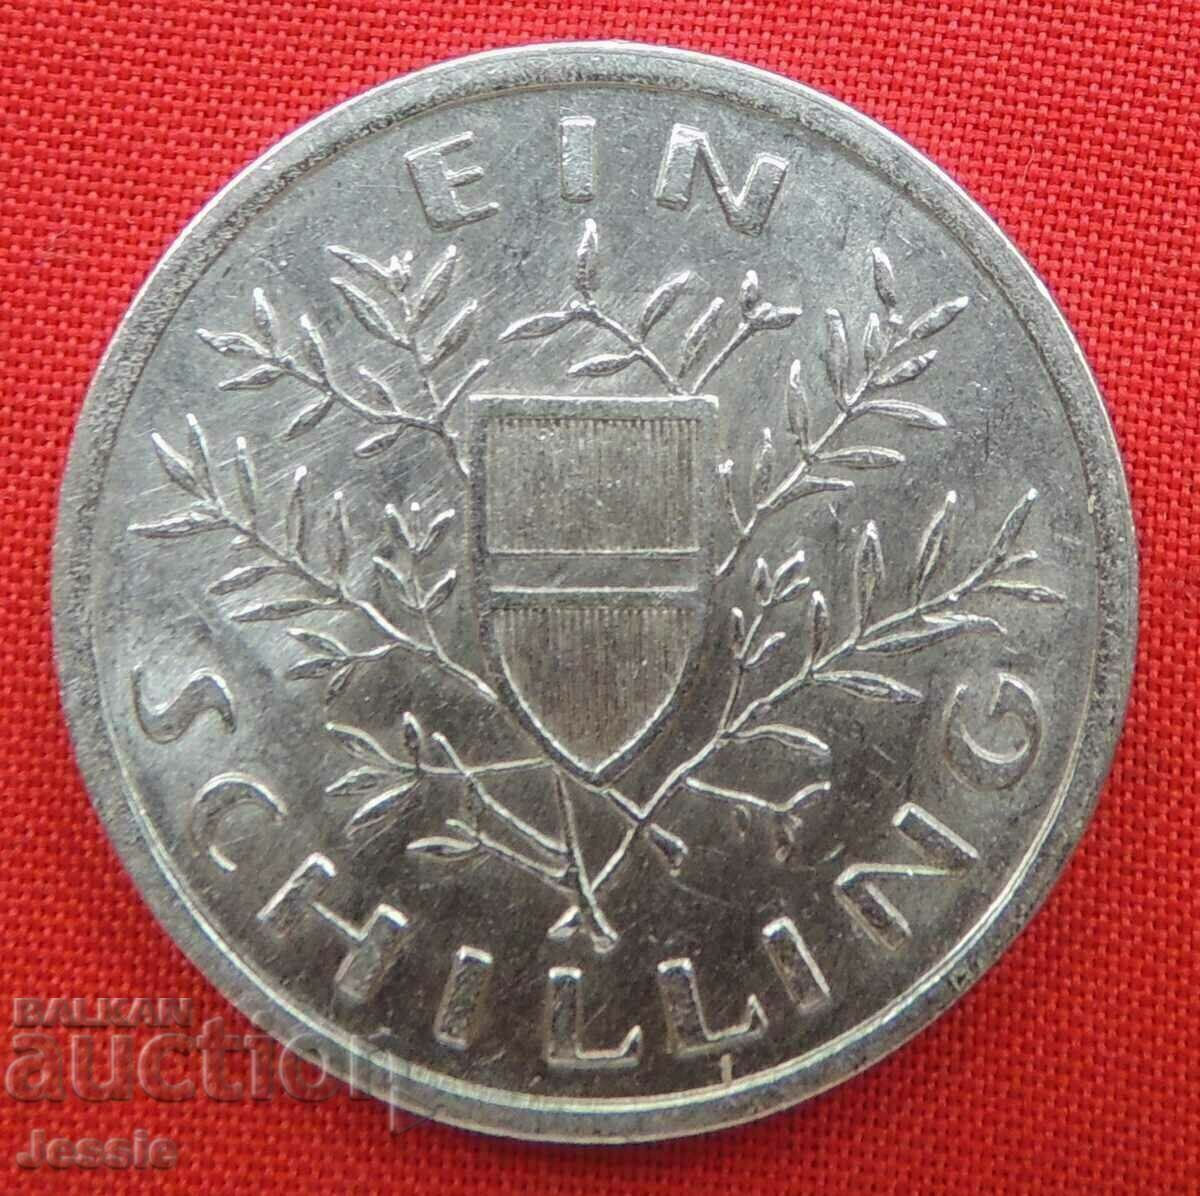 1 шилинг 1926 г. Австрия сребро